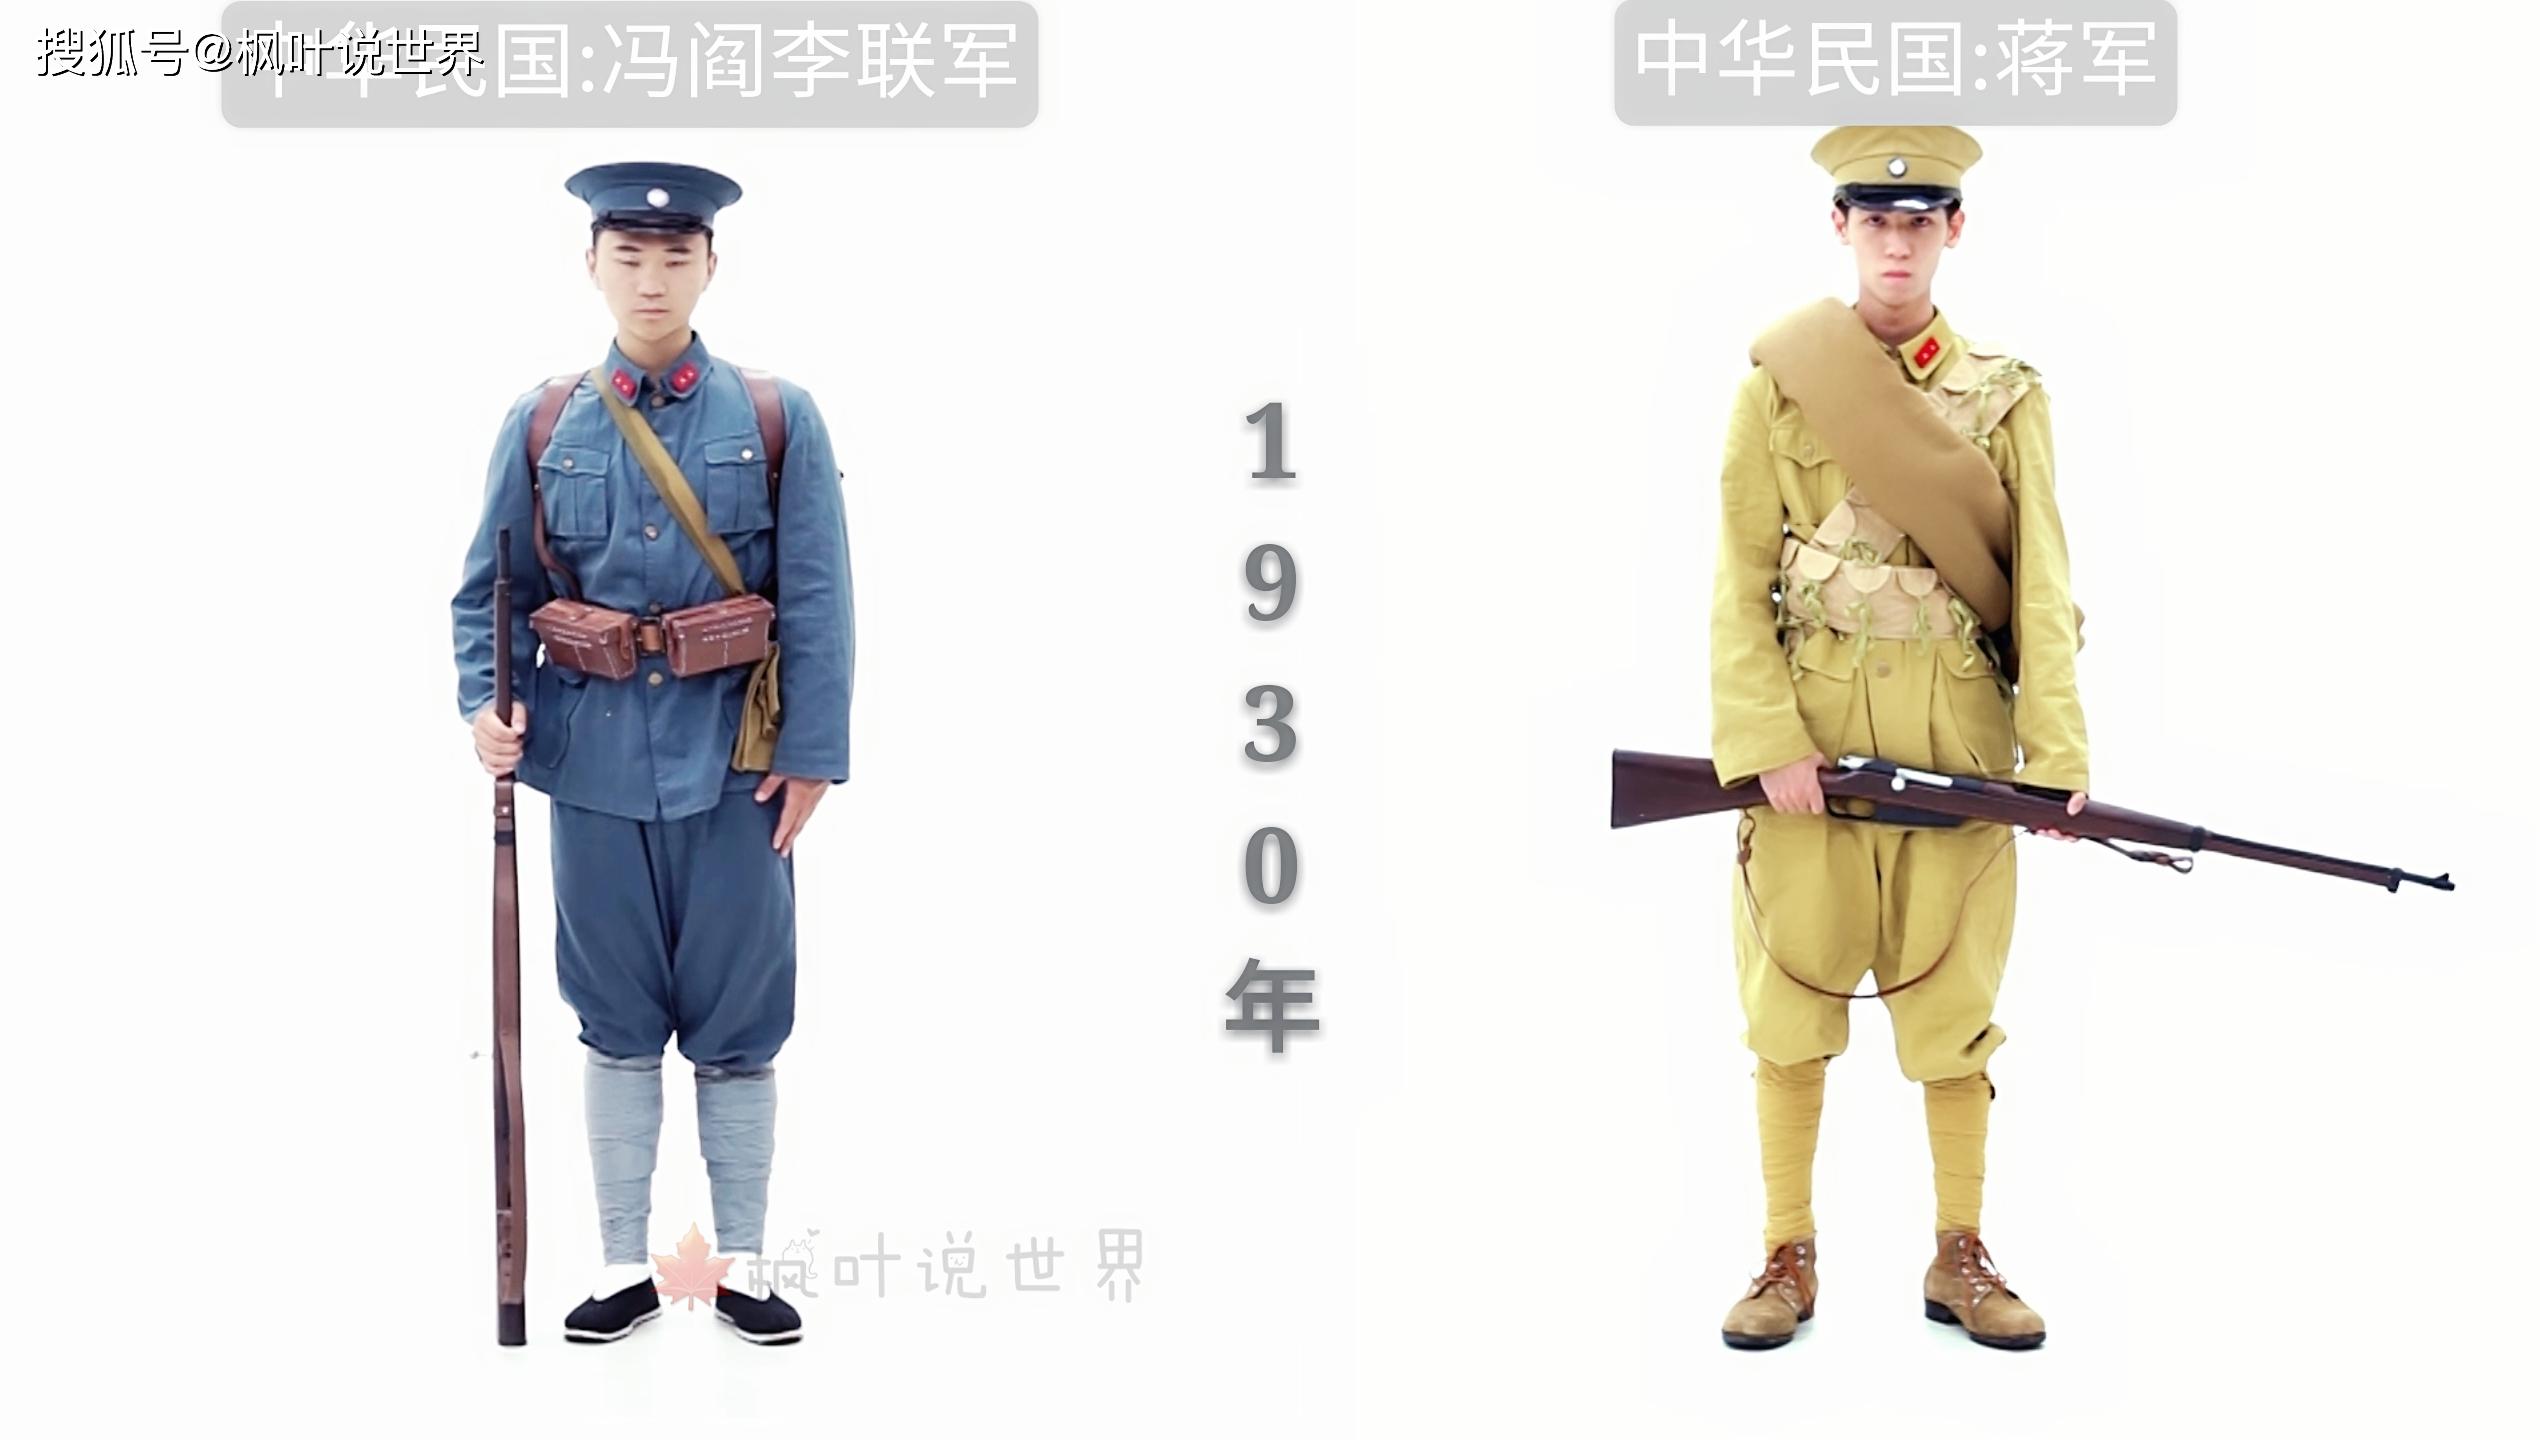 中国近代陆军军服演变-士兵篇